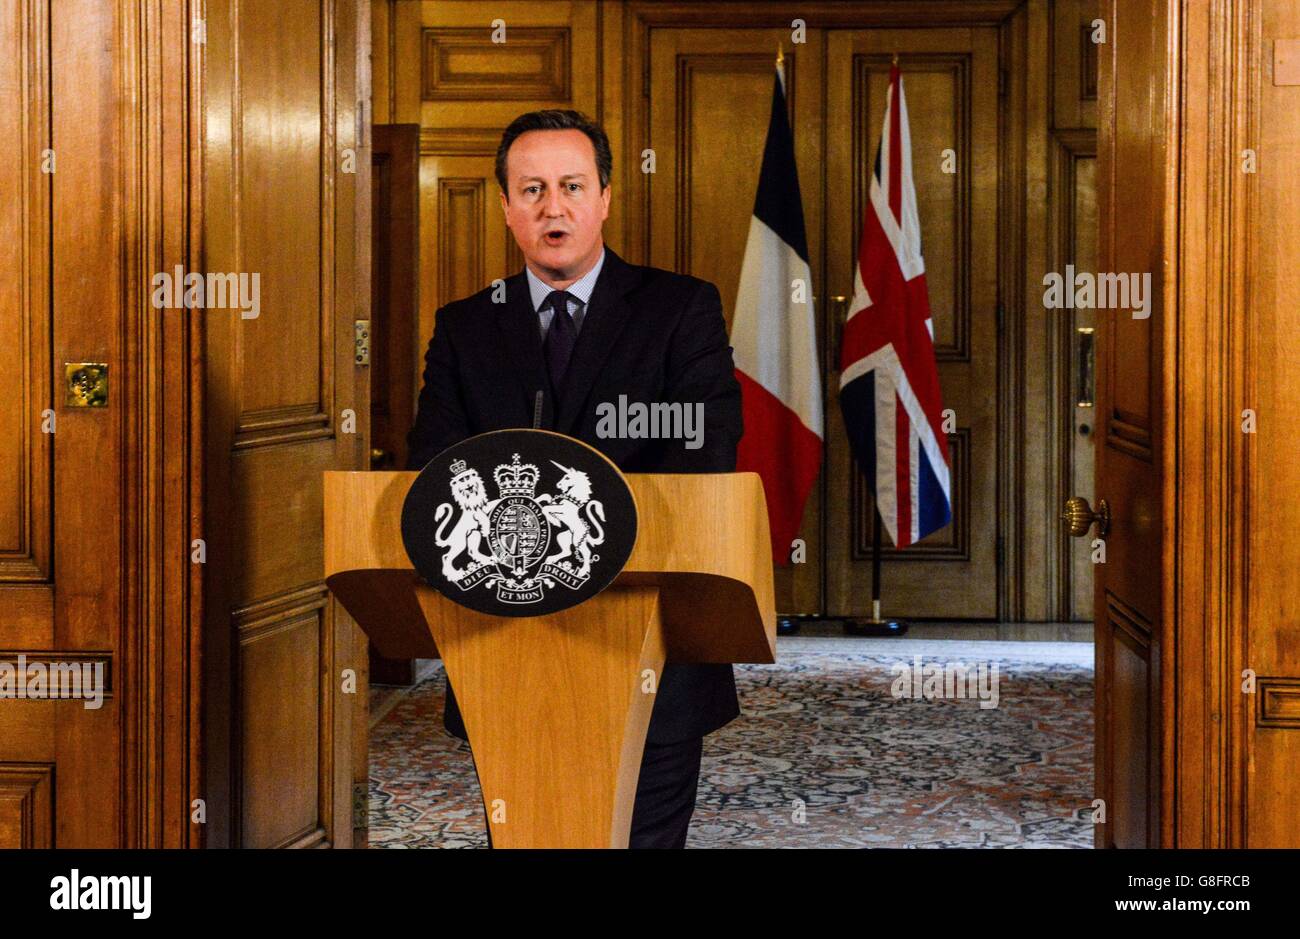 Il primo ministro David Cameron parla nella Sala da pranzo di Stato di 10 Downing Street, Londra dopo aver presiedere un incontro di emergenza di Cobra sulla scia di una serie di attentati terroristici coordinati a Parigi venerdì sera, che hanno causato almeno 127 morti e oltre 200 feriti. Foto Stock